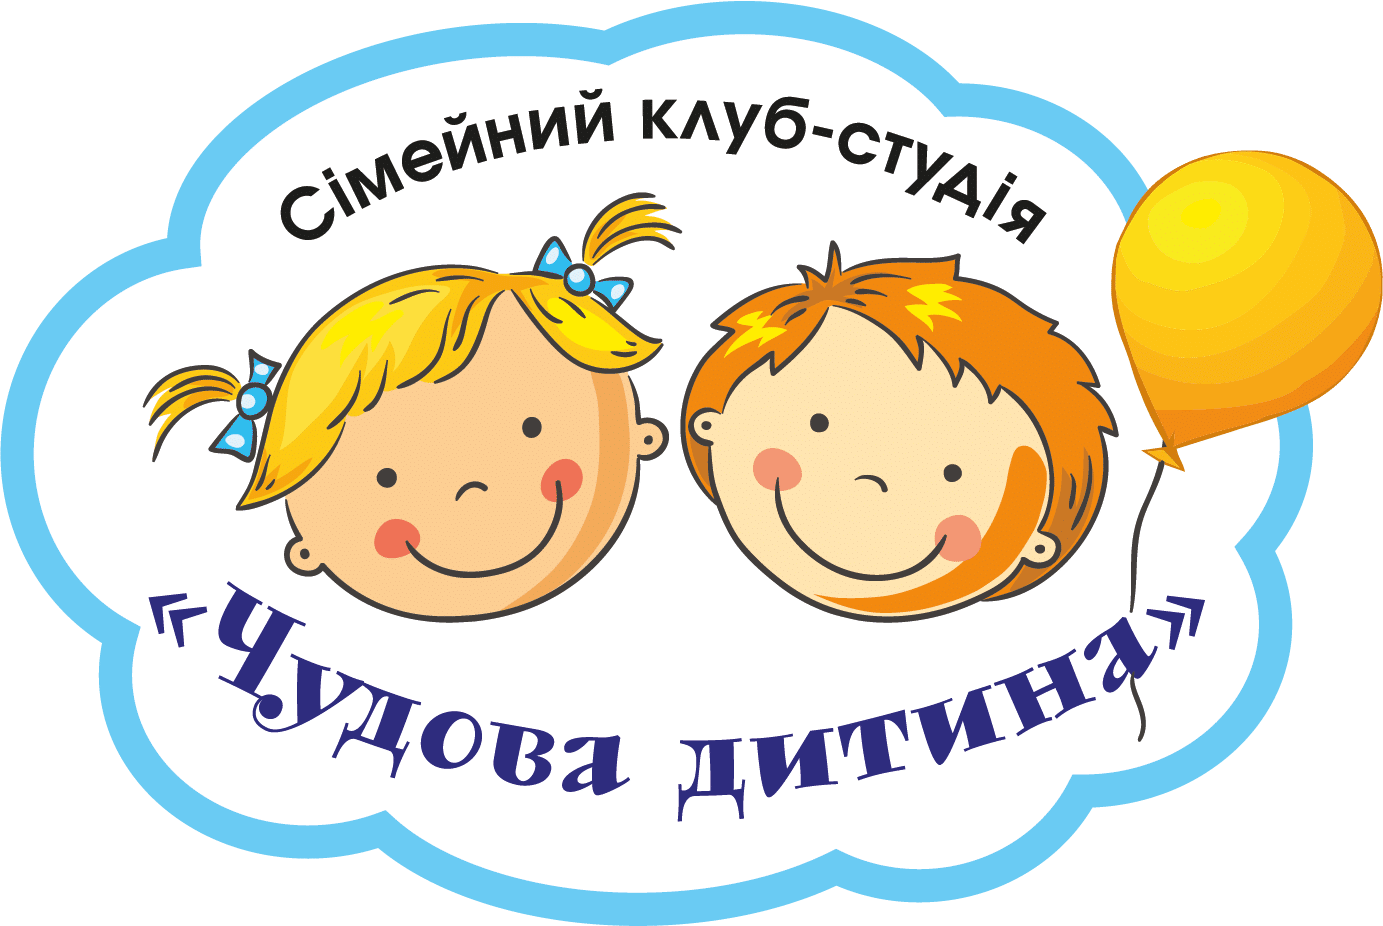 Семейный клуб-студия Чудесный ребенок г. Запорожье Logo